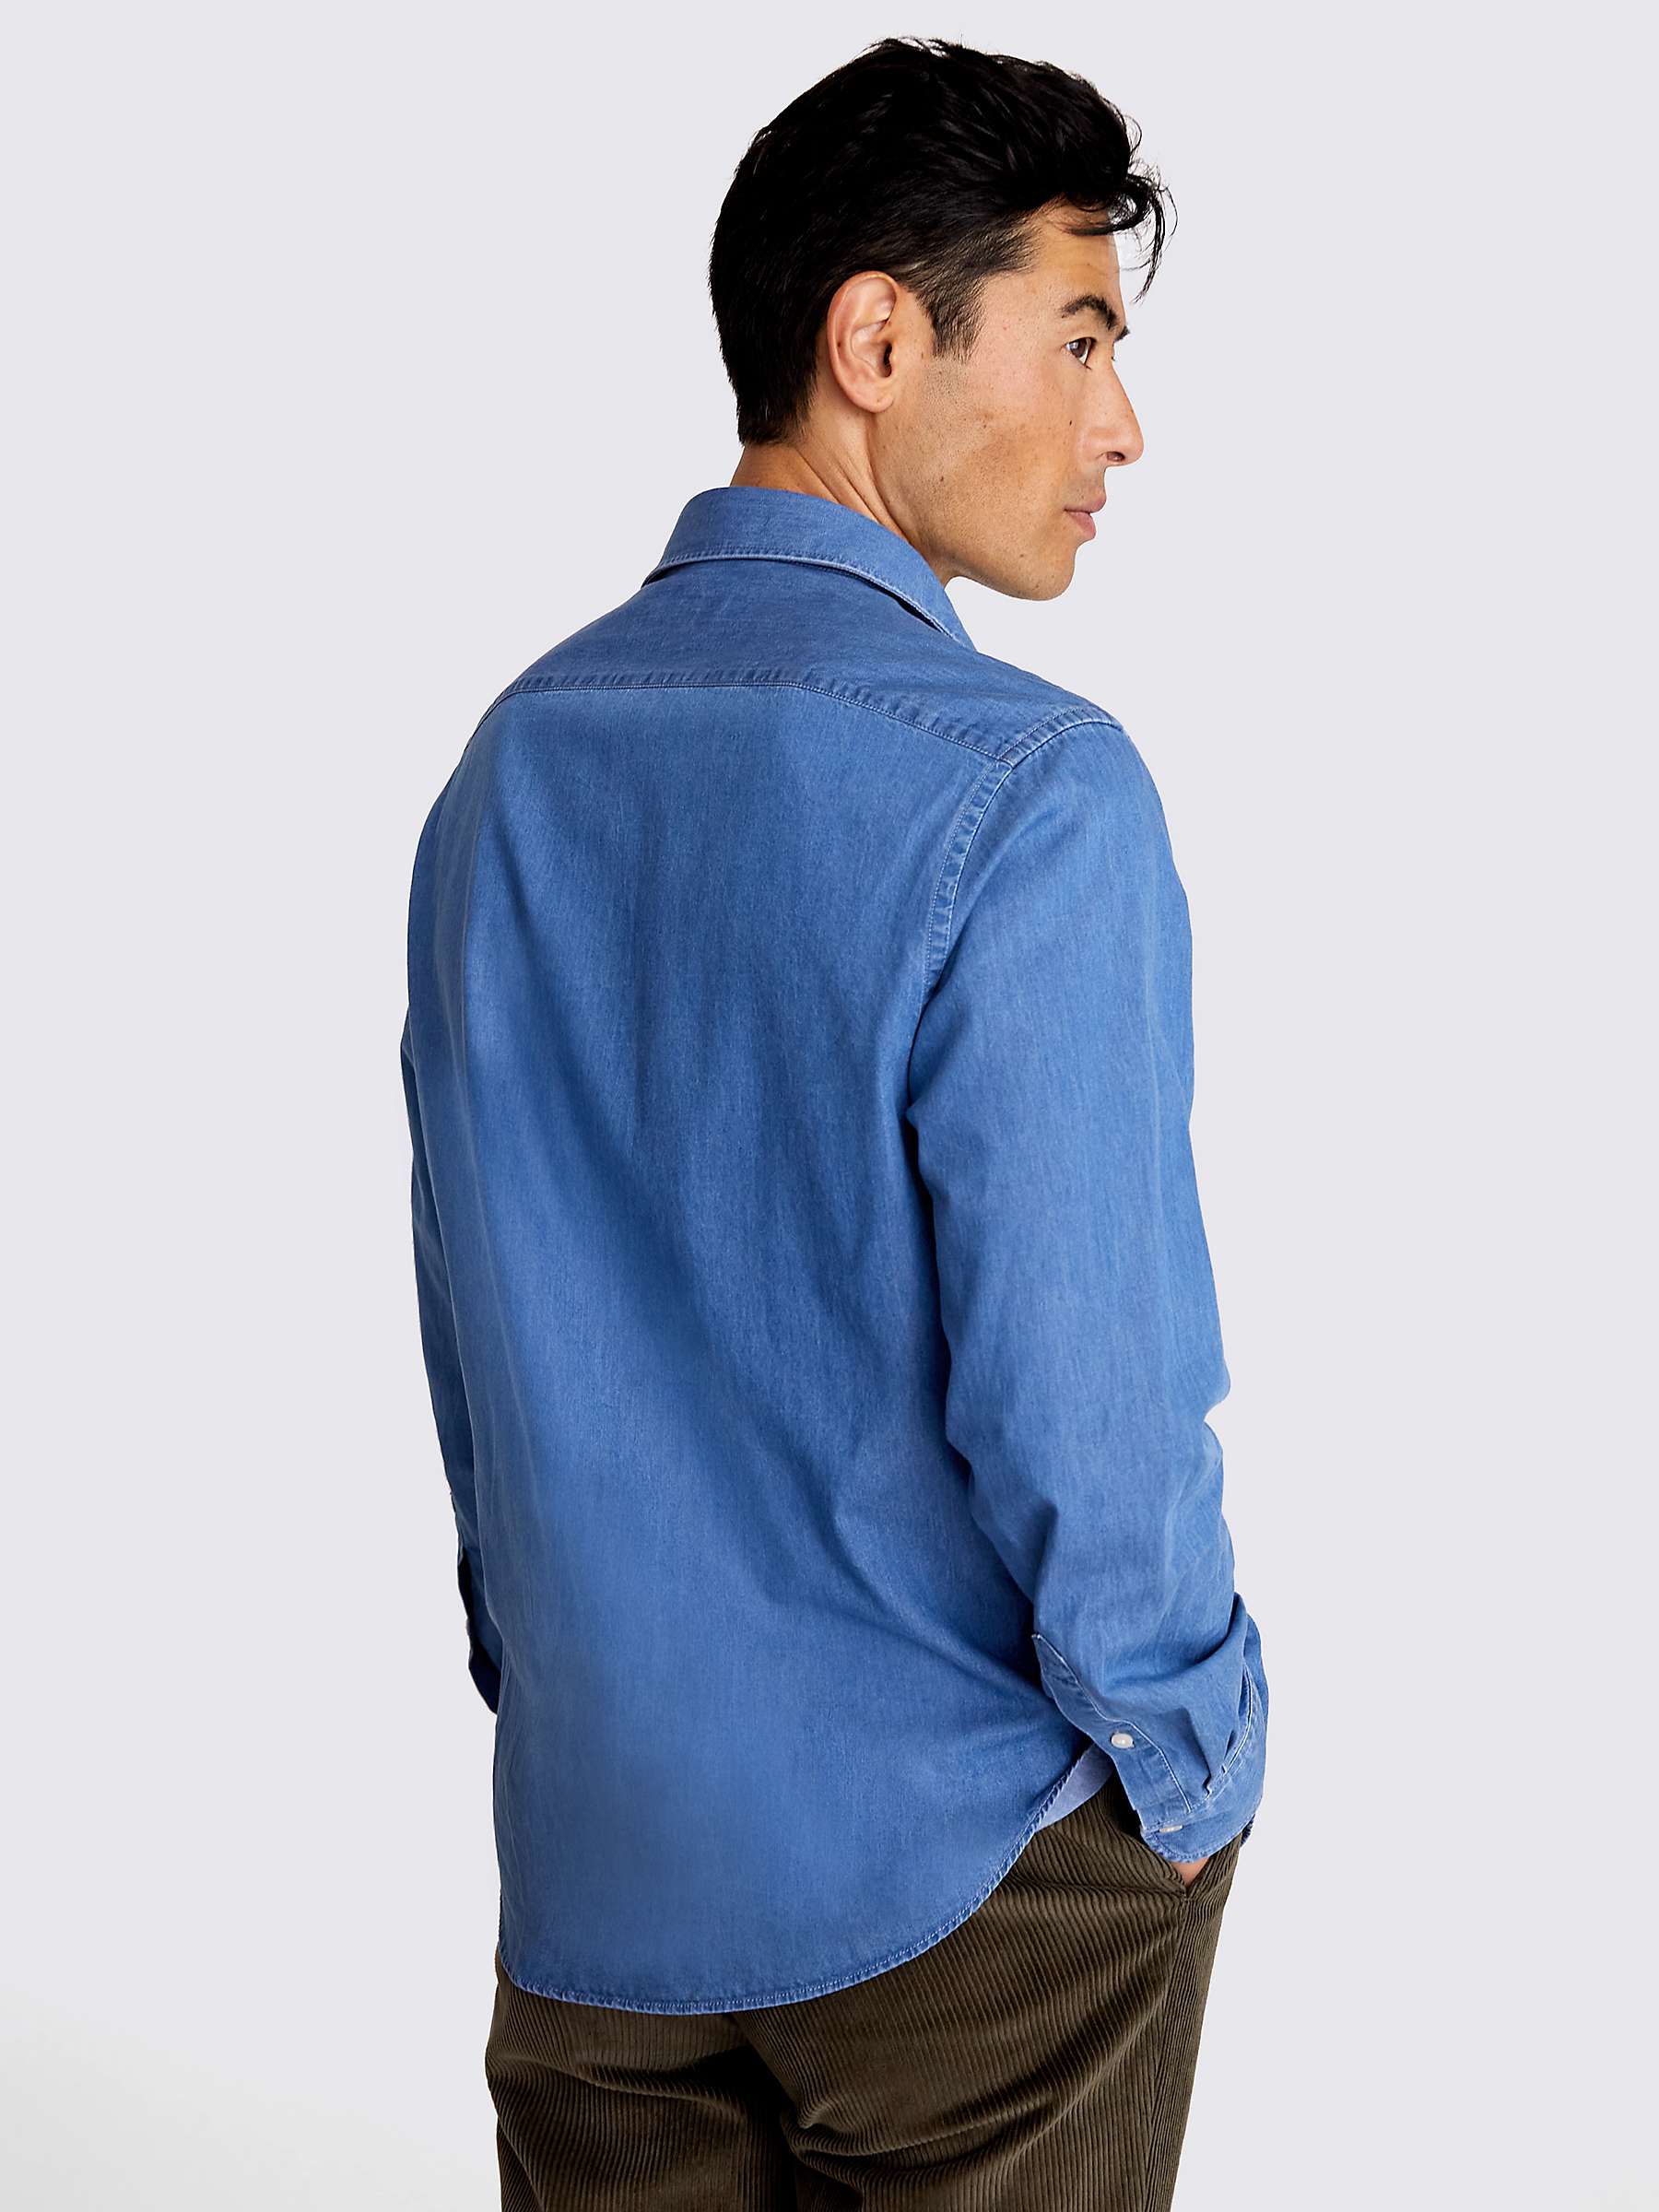 Buy Moss Long Sleeve Denim Shirt, Blue Online at johnlewis.com